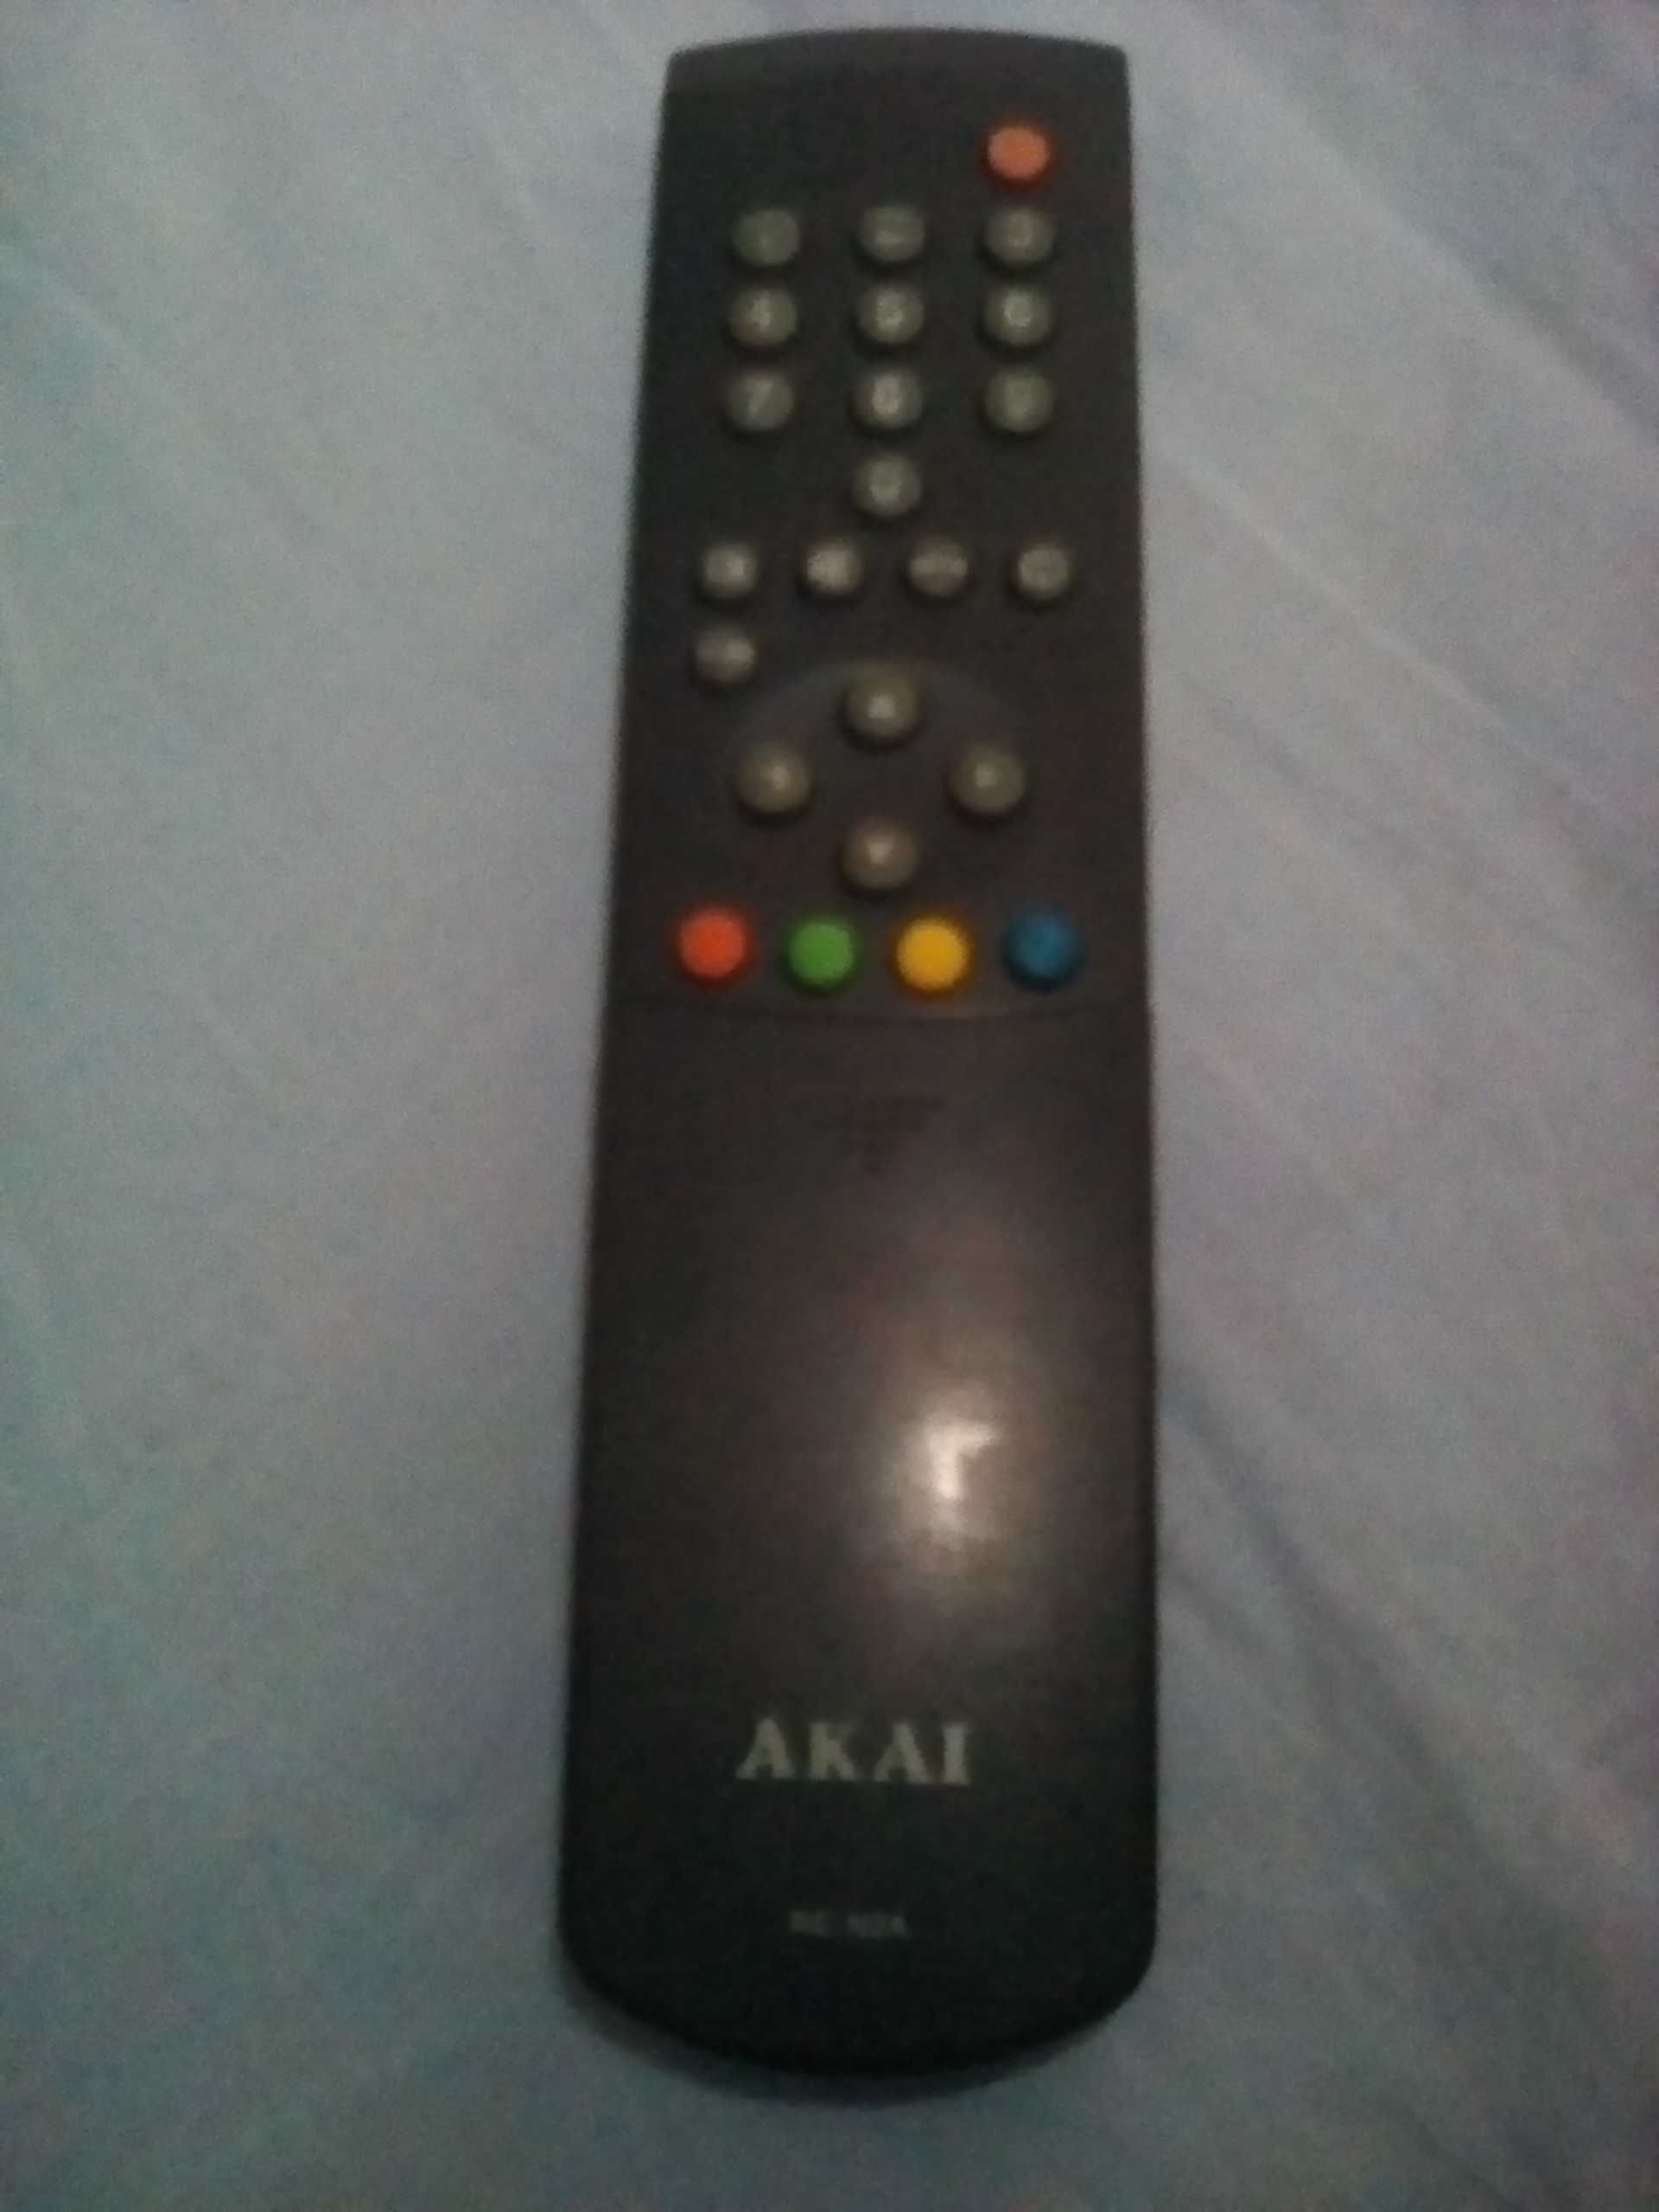 De vanzare televizor color Akai diagonala 50cm, tv